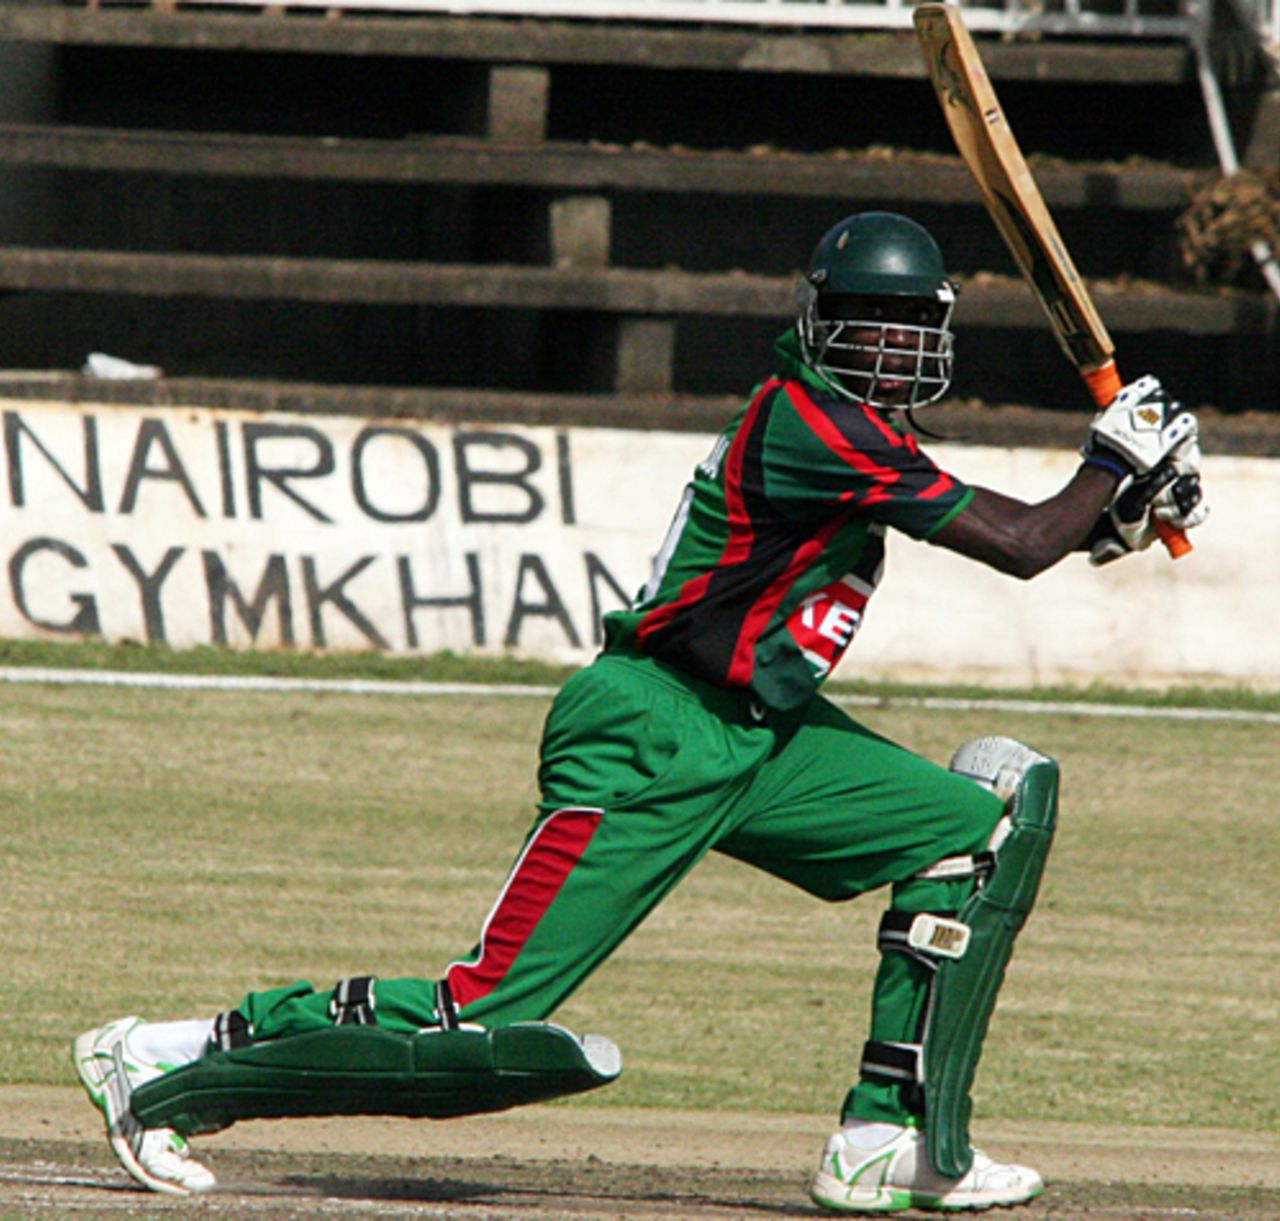 Alex Obanda's fifty helped Kenya home, Kenya v Netherlands, 1st ODI, Nairobi, February 16, 2010